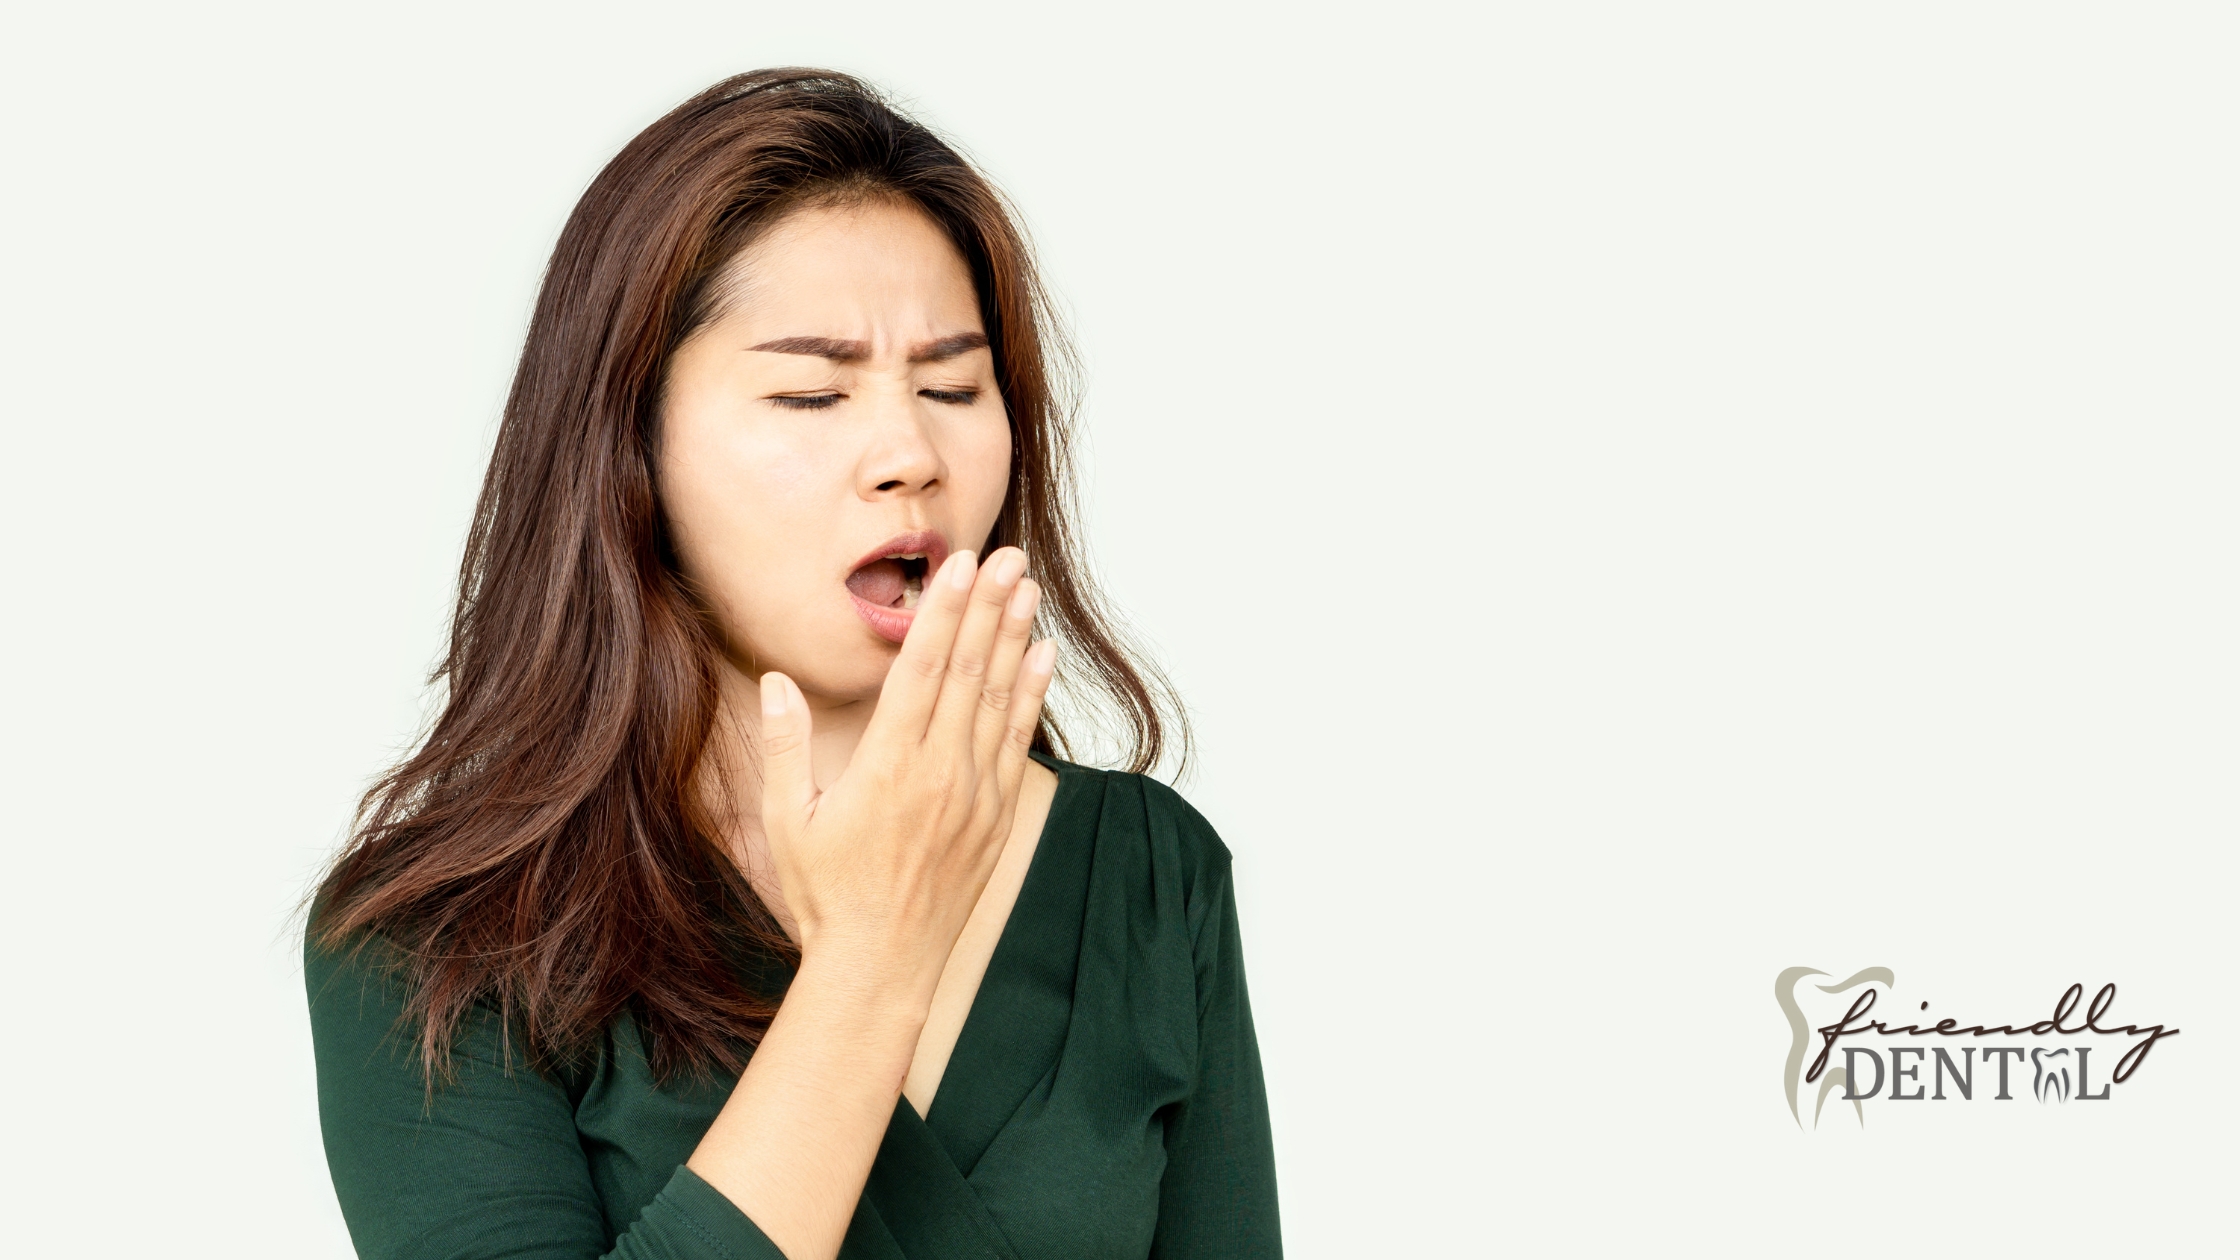 Causes Behind Bad Breath